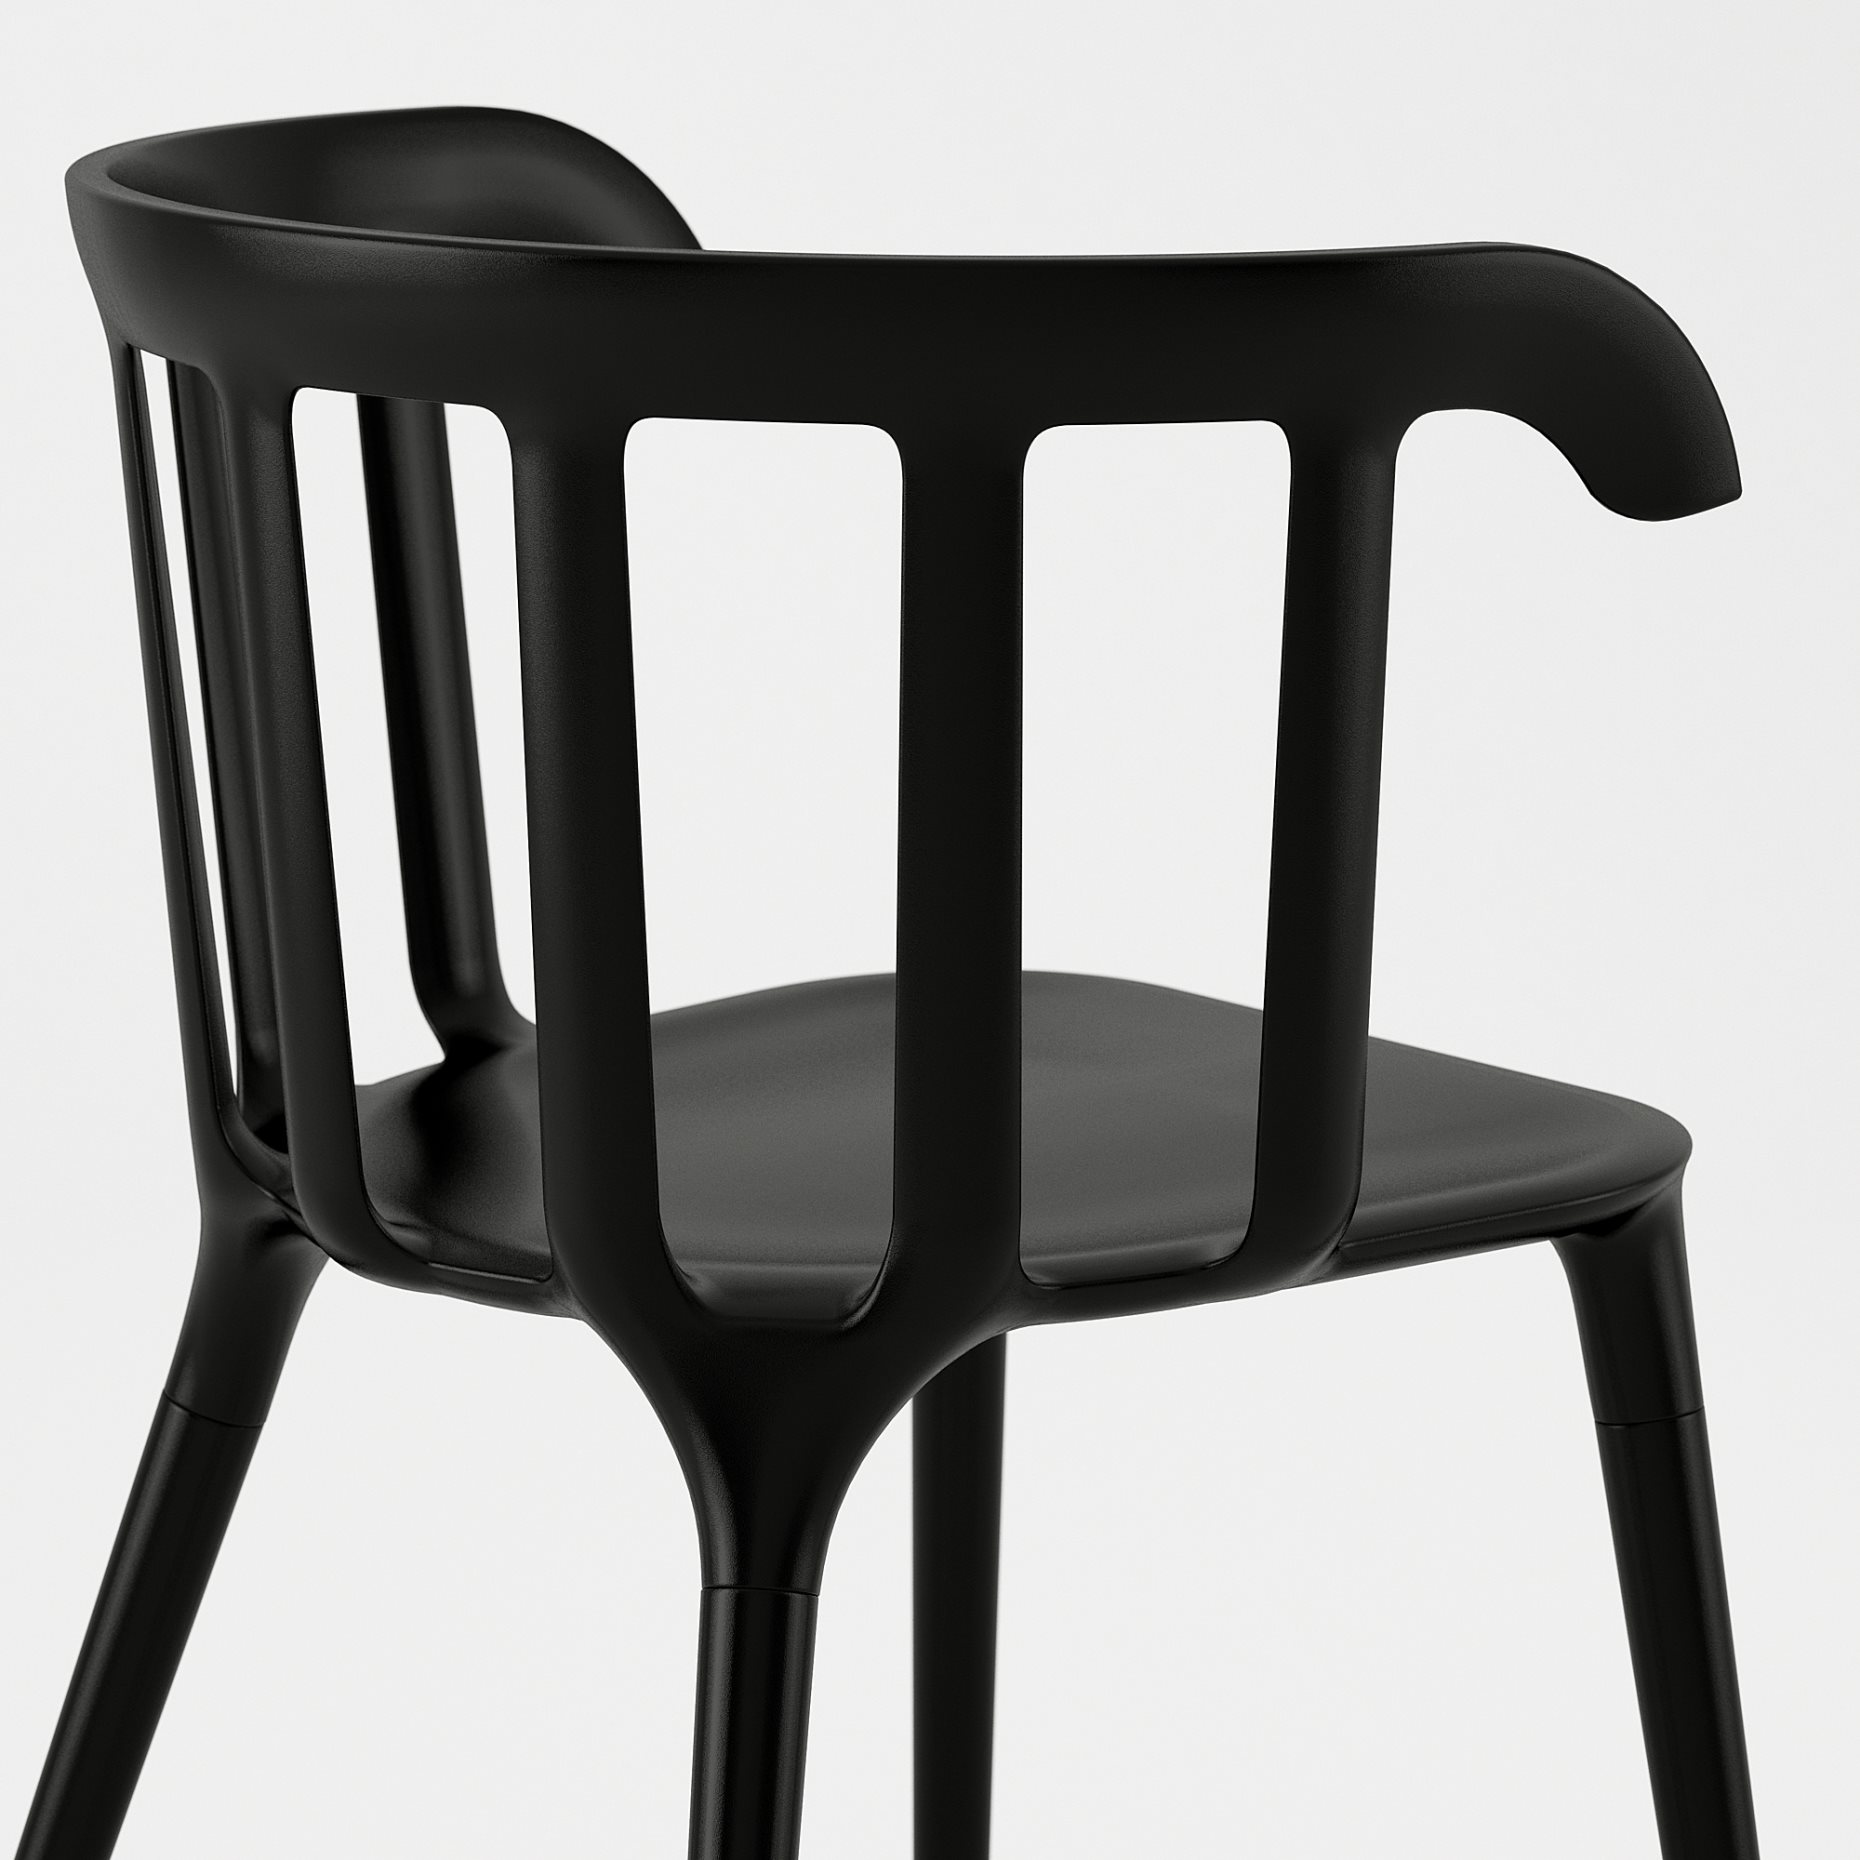 MOCKELBY/IKEA PS 2012, τραπέζι και 6 καρέκλες, 991.317.90